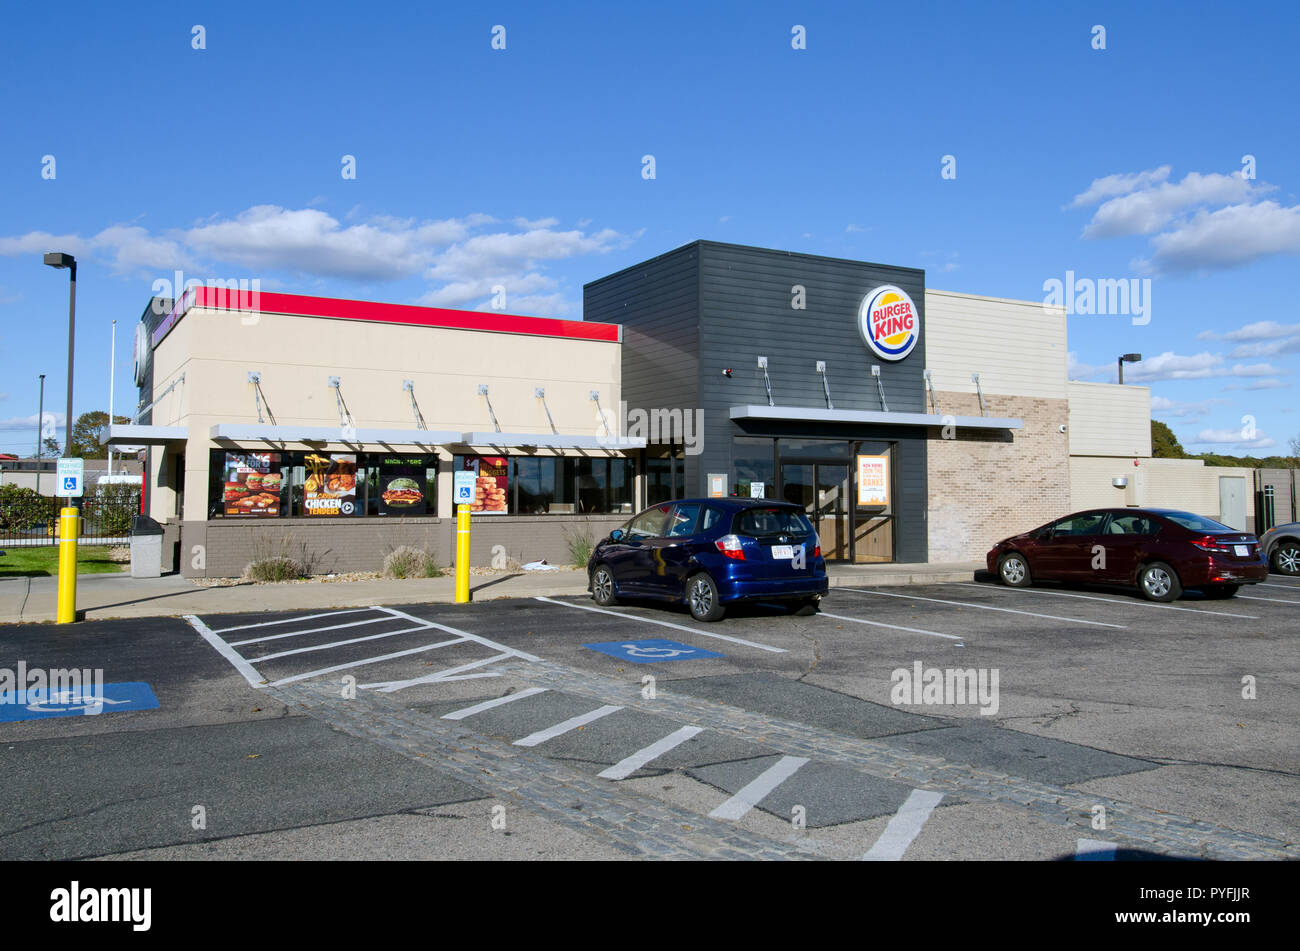 Franchise de restauration rapide Burger King restaurant extérieur en Falmouth, Cape Cod, Massachusetts USA Banque D'Images